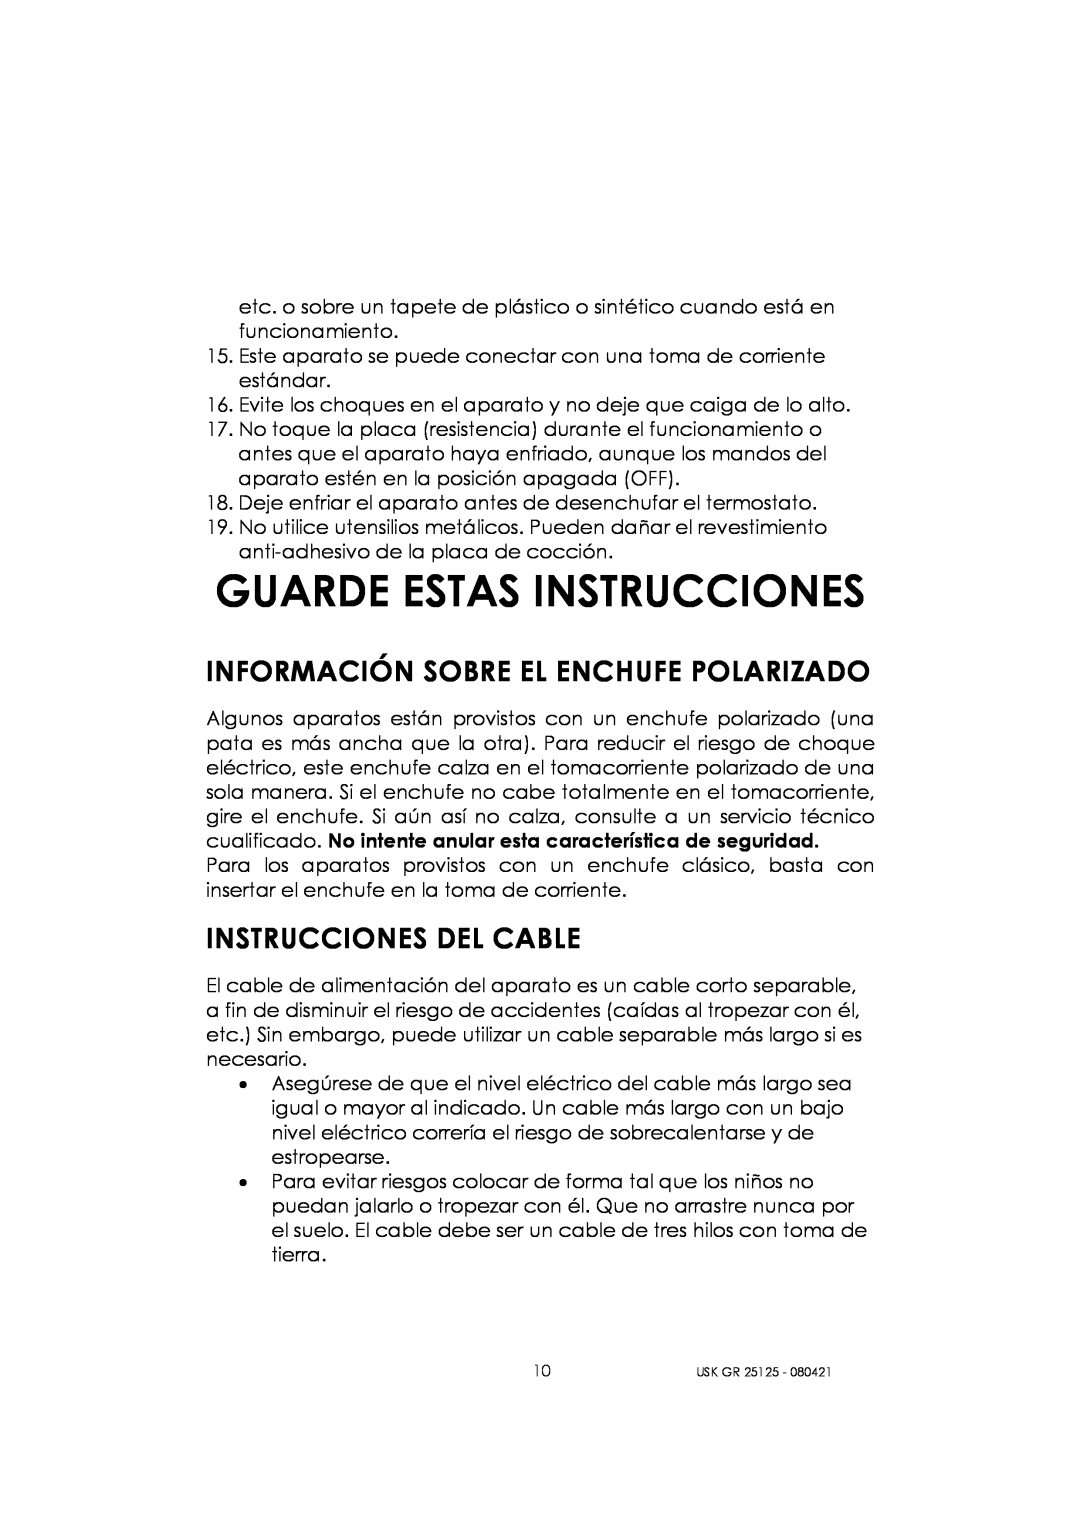 Kalorik USK GR 25125 manual Guarde Estas Instrucciones, Información Sobre El Enchufe Polarizado, Instrucciones Del Cable 